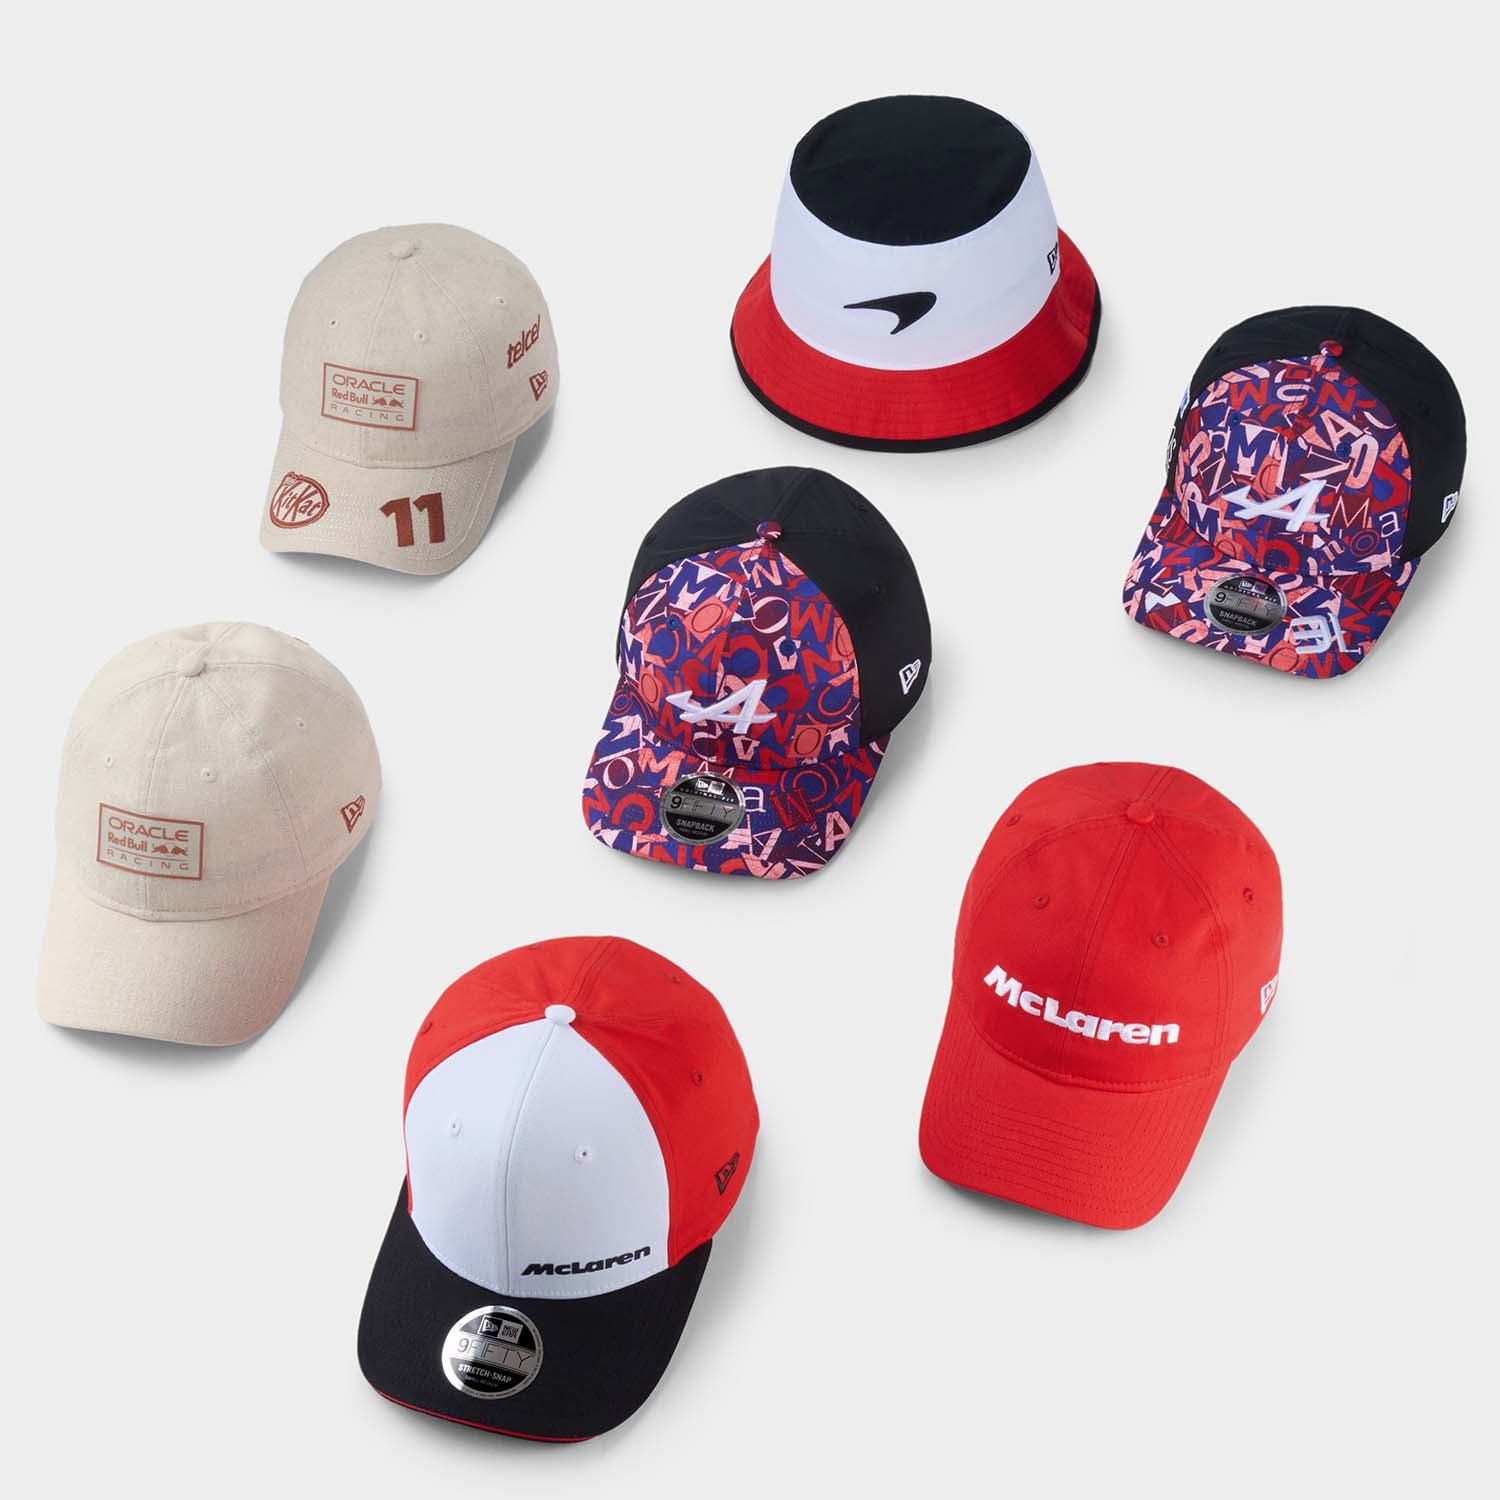 New Era | New Era Hats & Apparel – New Era Cap